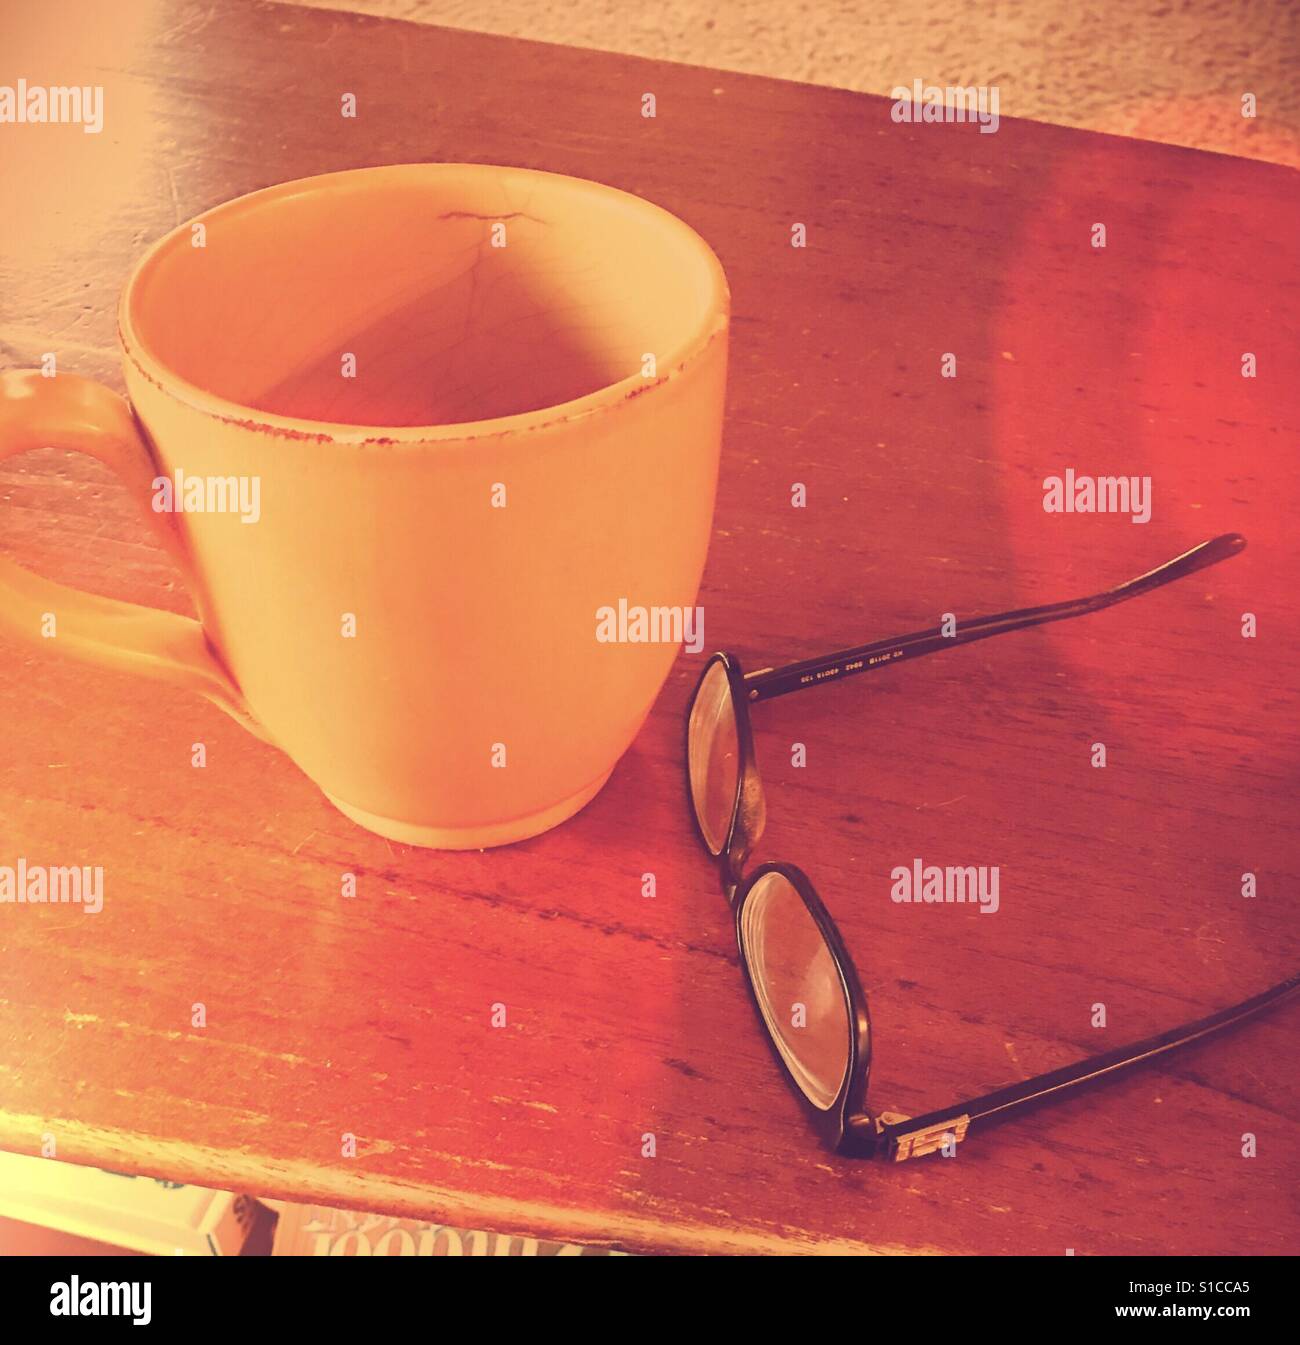 Coffee Mug and Glasses on Table Stock Photo